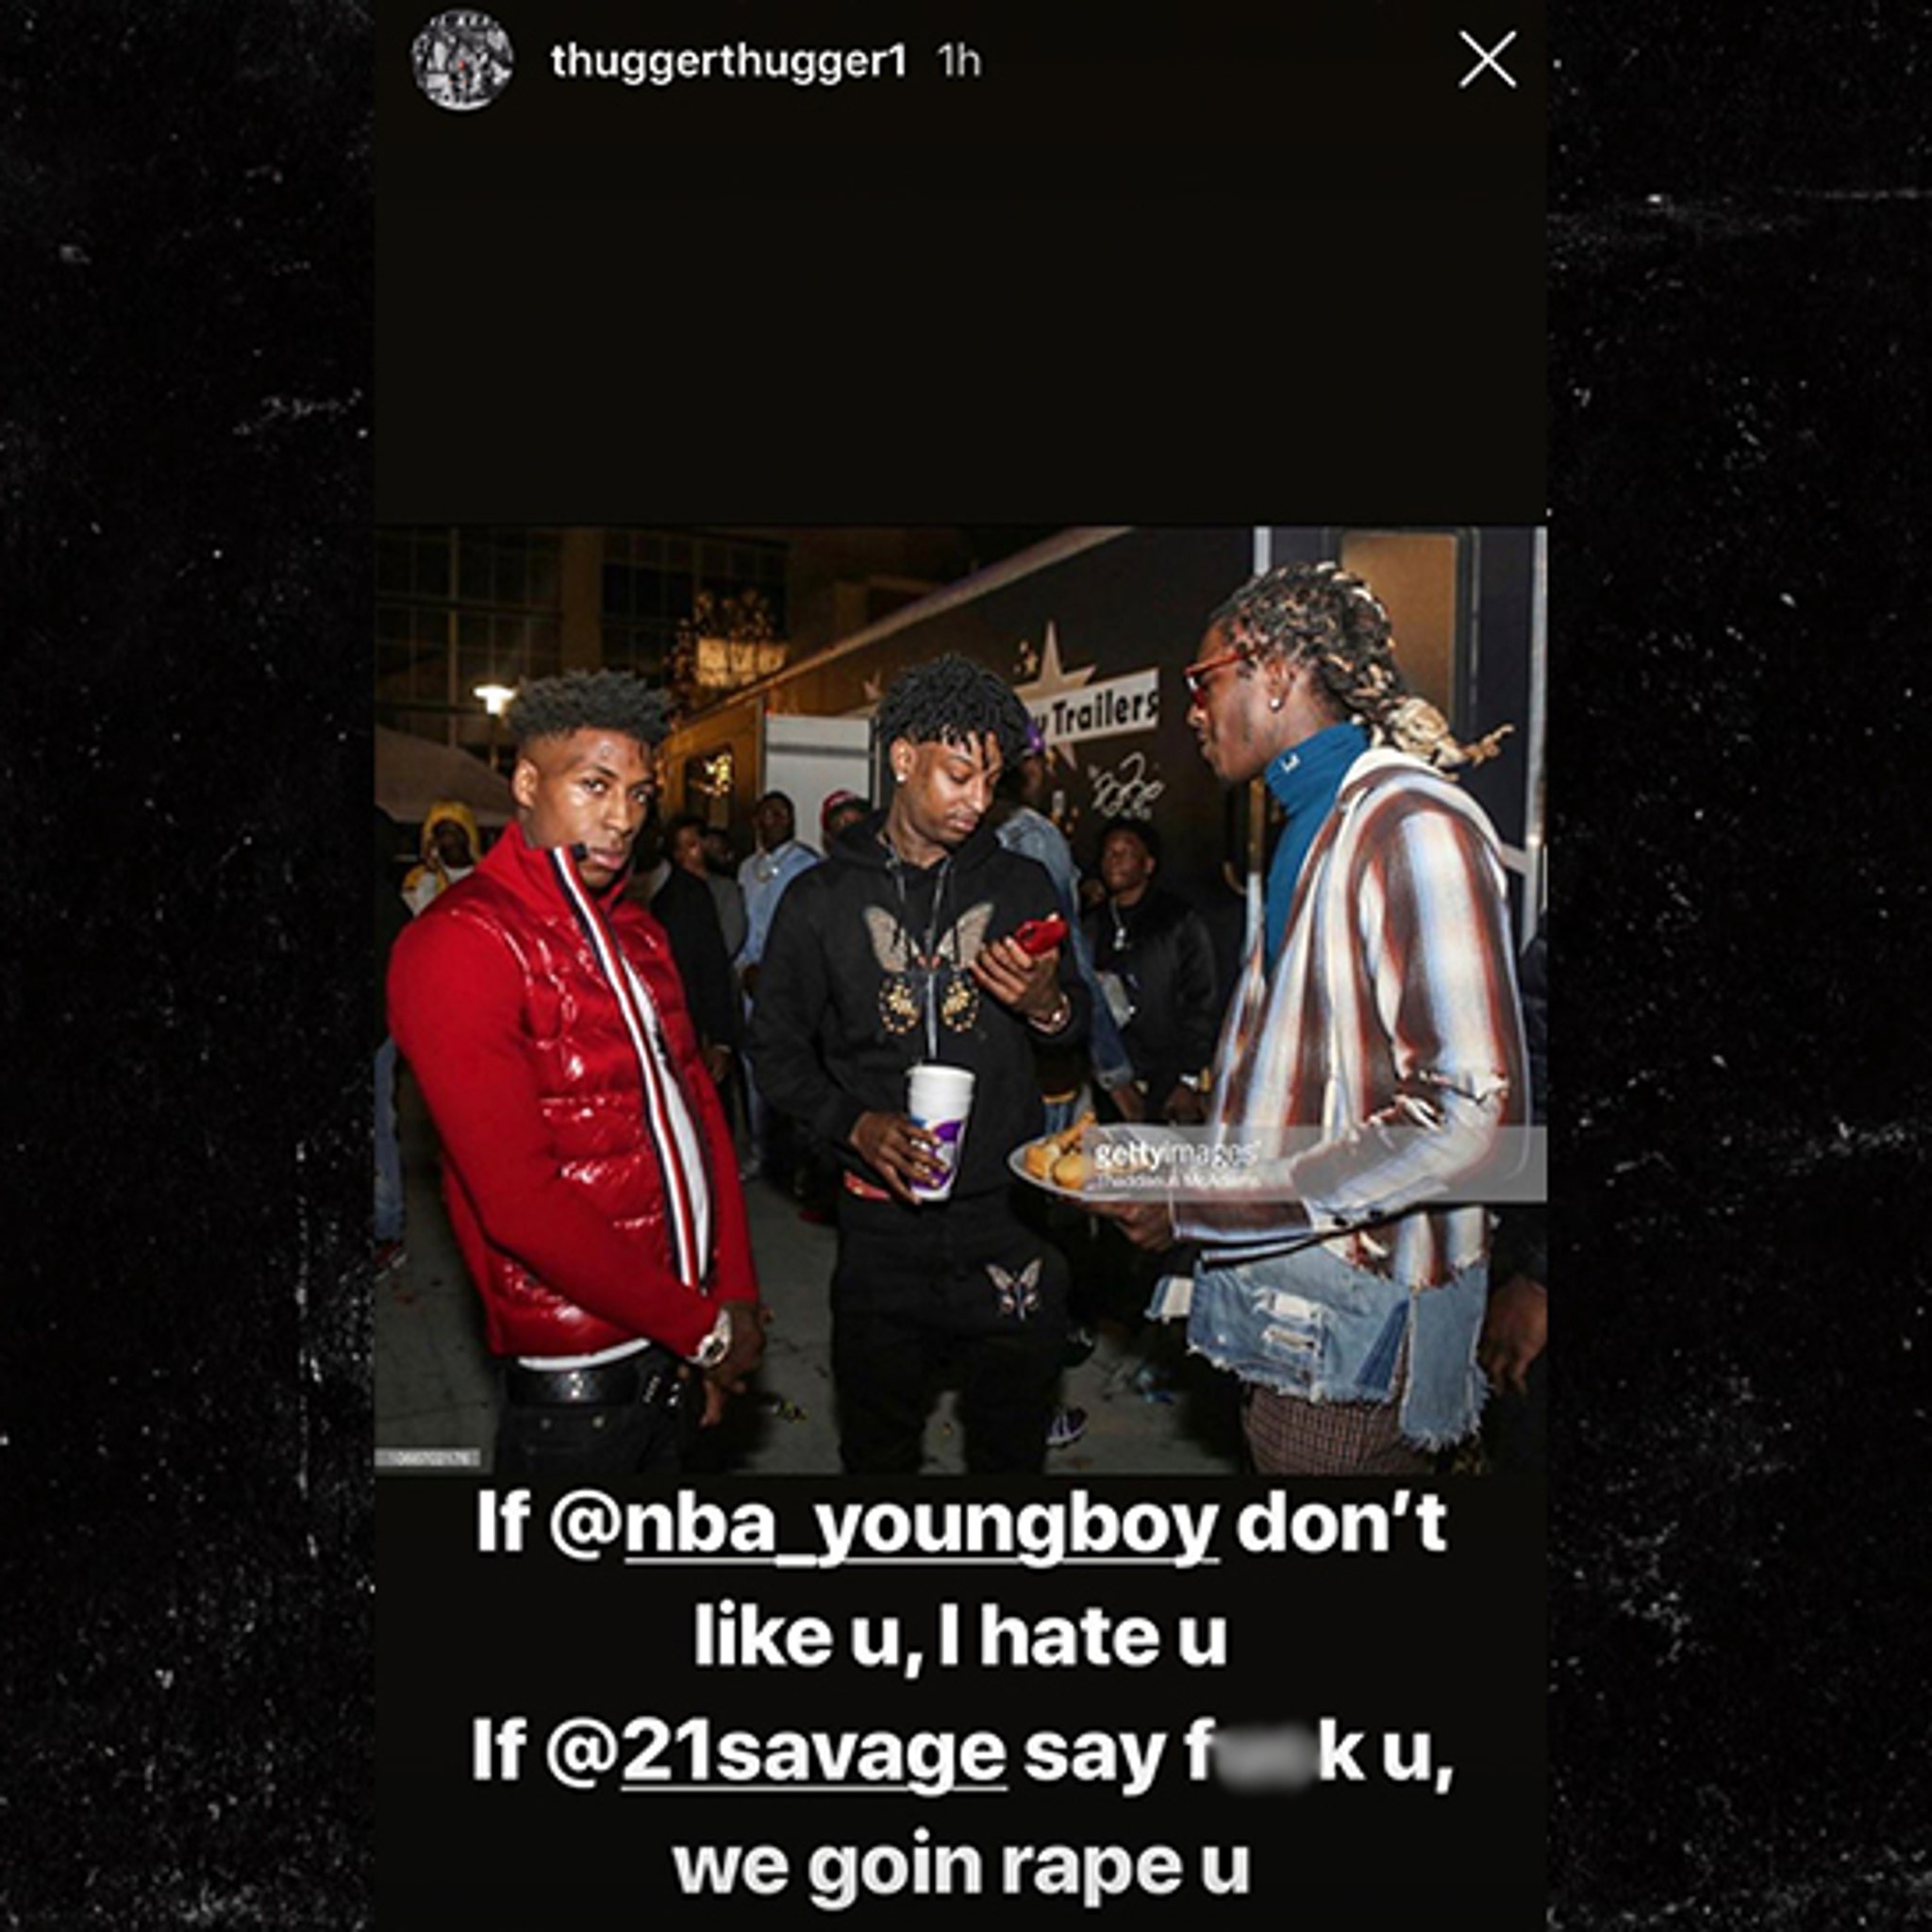 21savage on Instagram: don't play wit himmmmmmmm!!!!